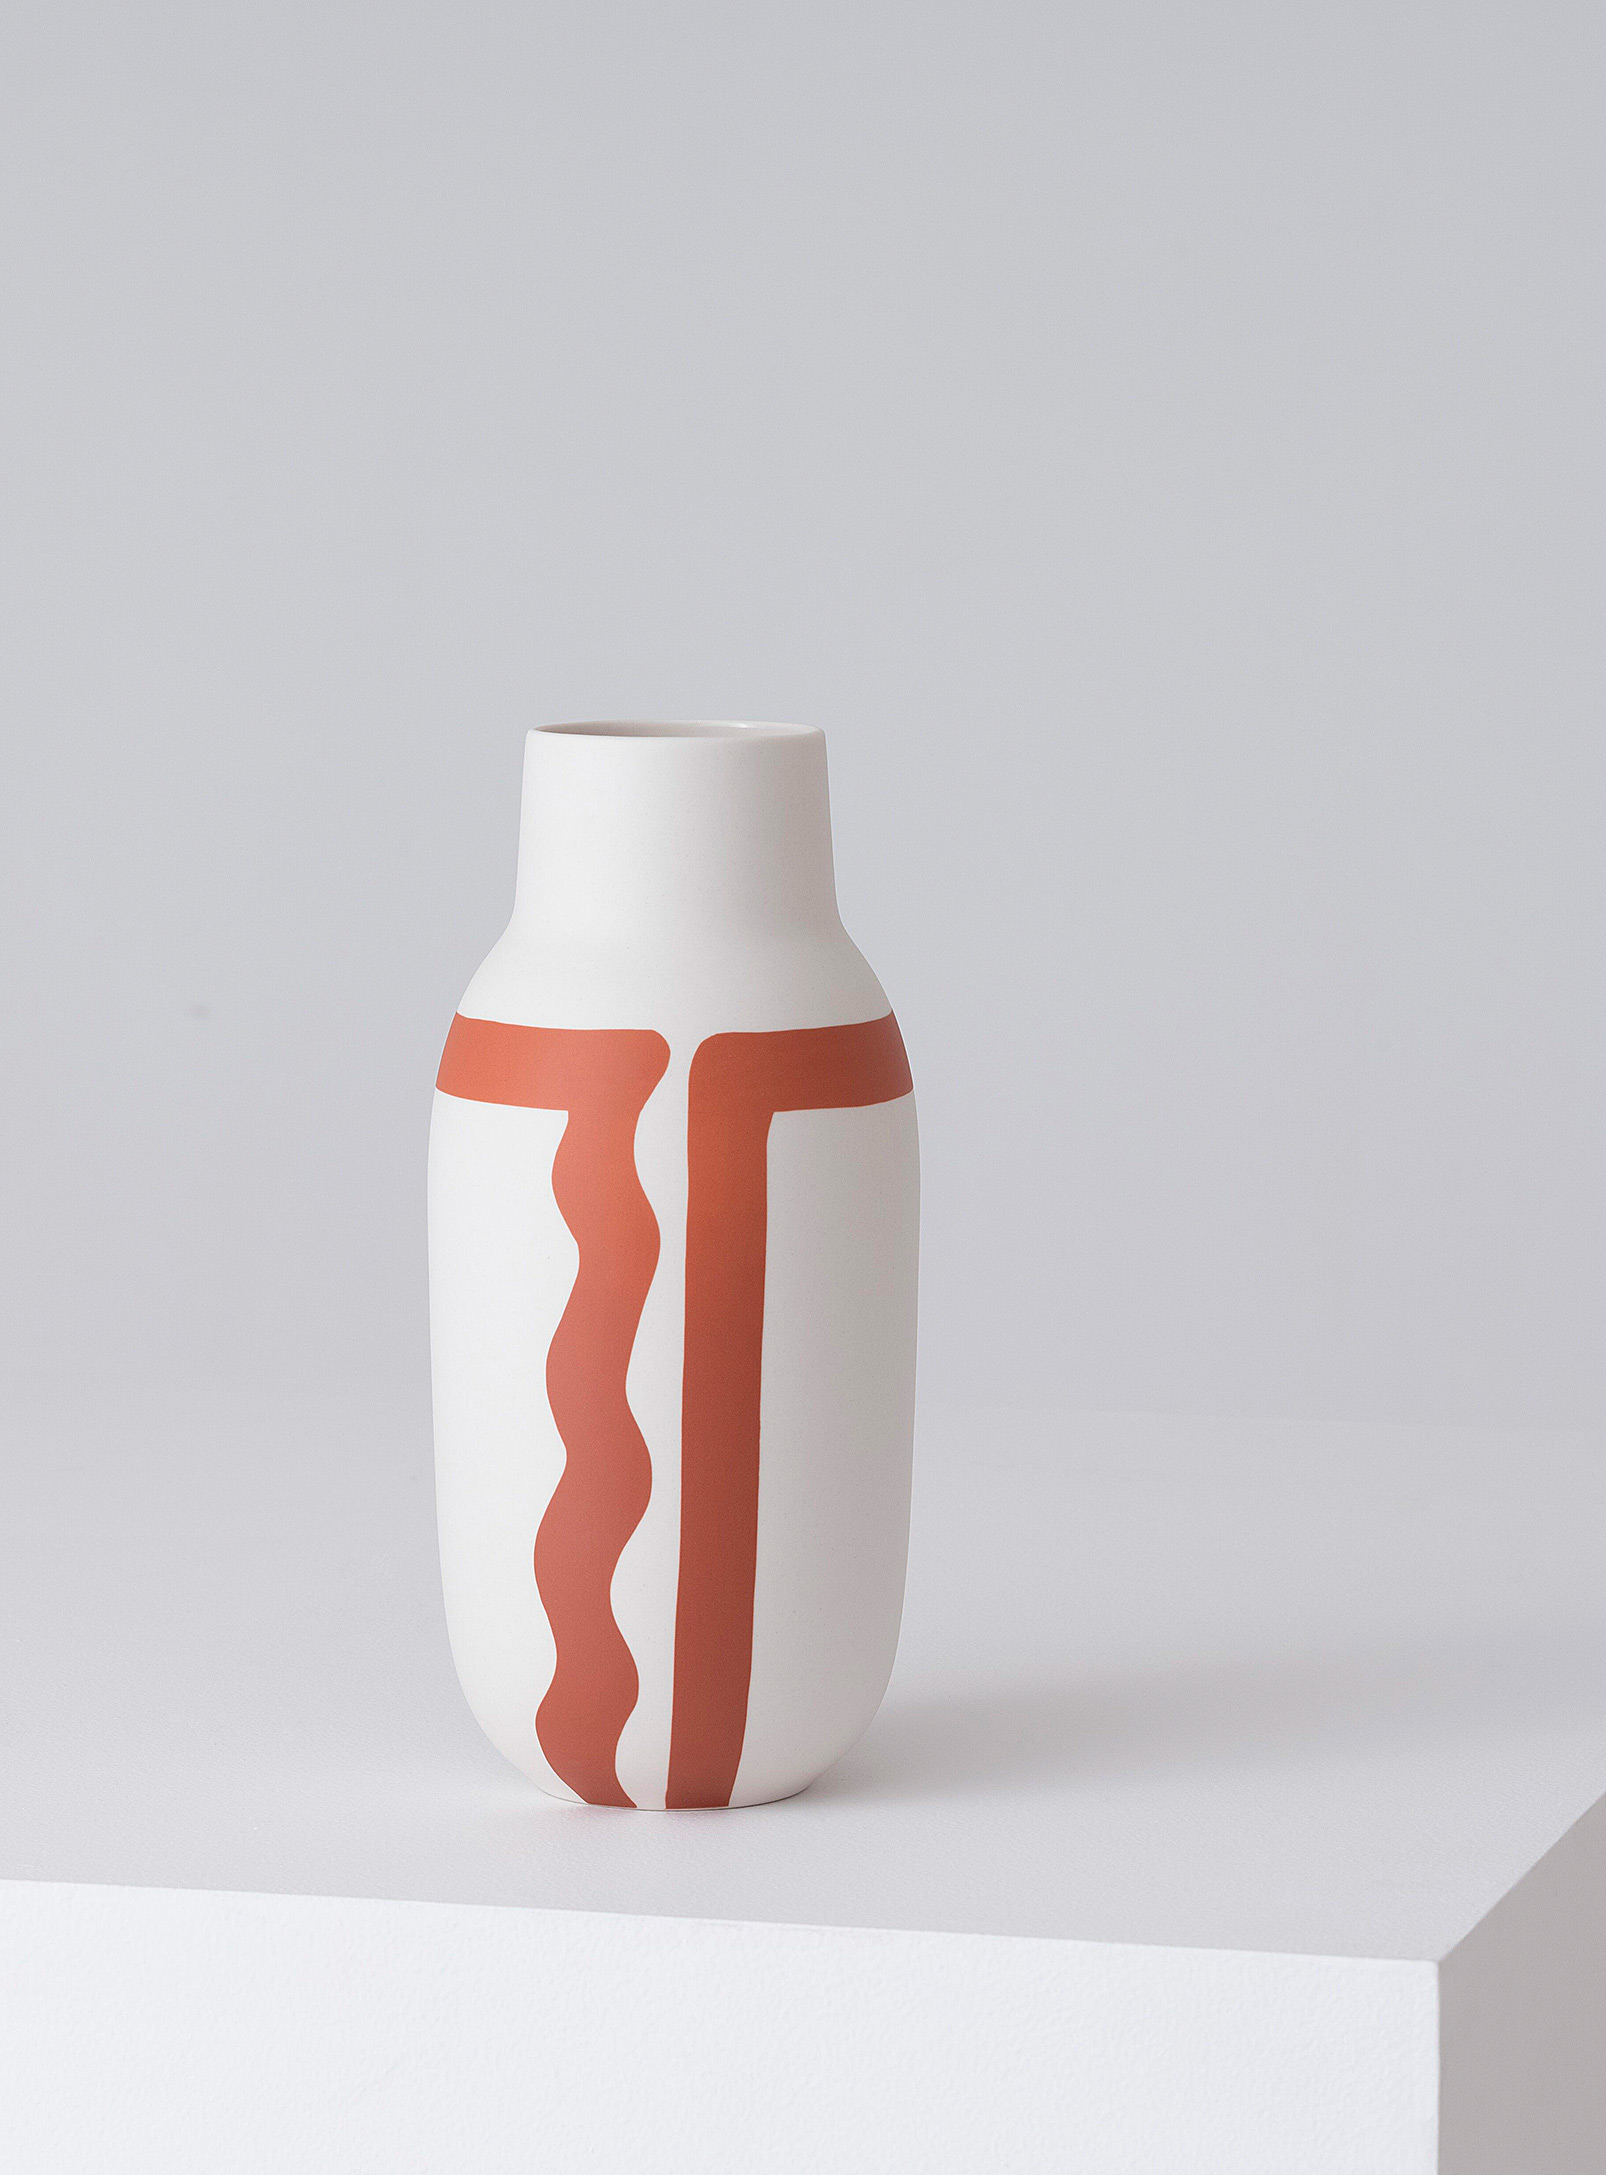 EQ3 - Le vase artisanal tracé sinueux 33 cm de hauteur